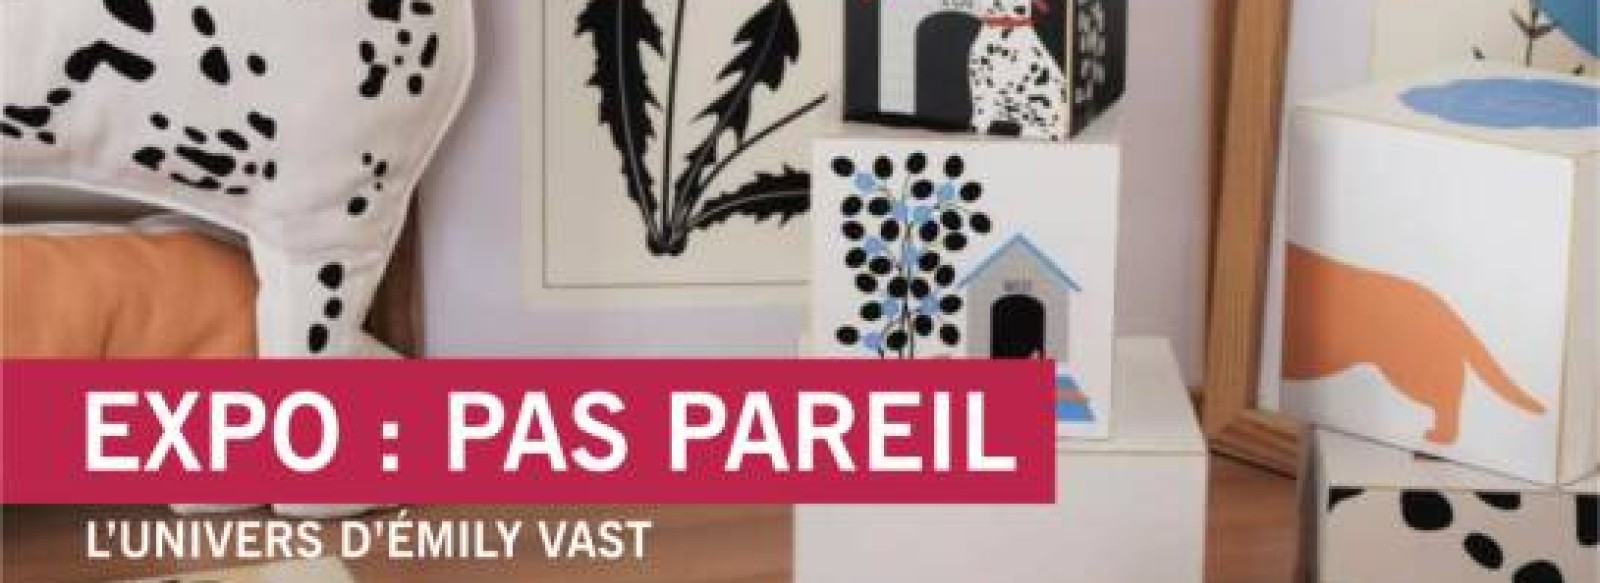 EXPOSITION "PAS PAREIL"- EMILY VAST